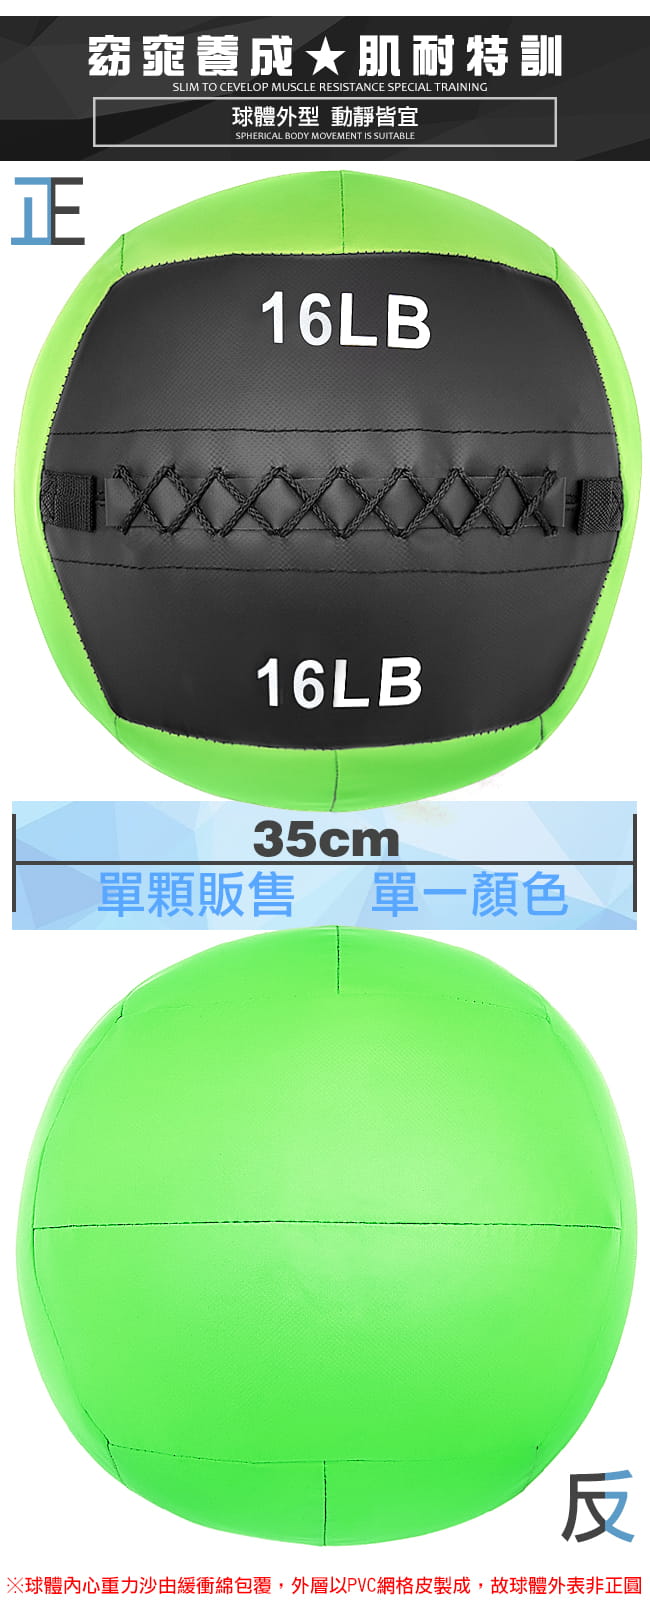 負重力16LB軟式藥球   7.2KG舉重量訓練球 4